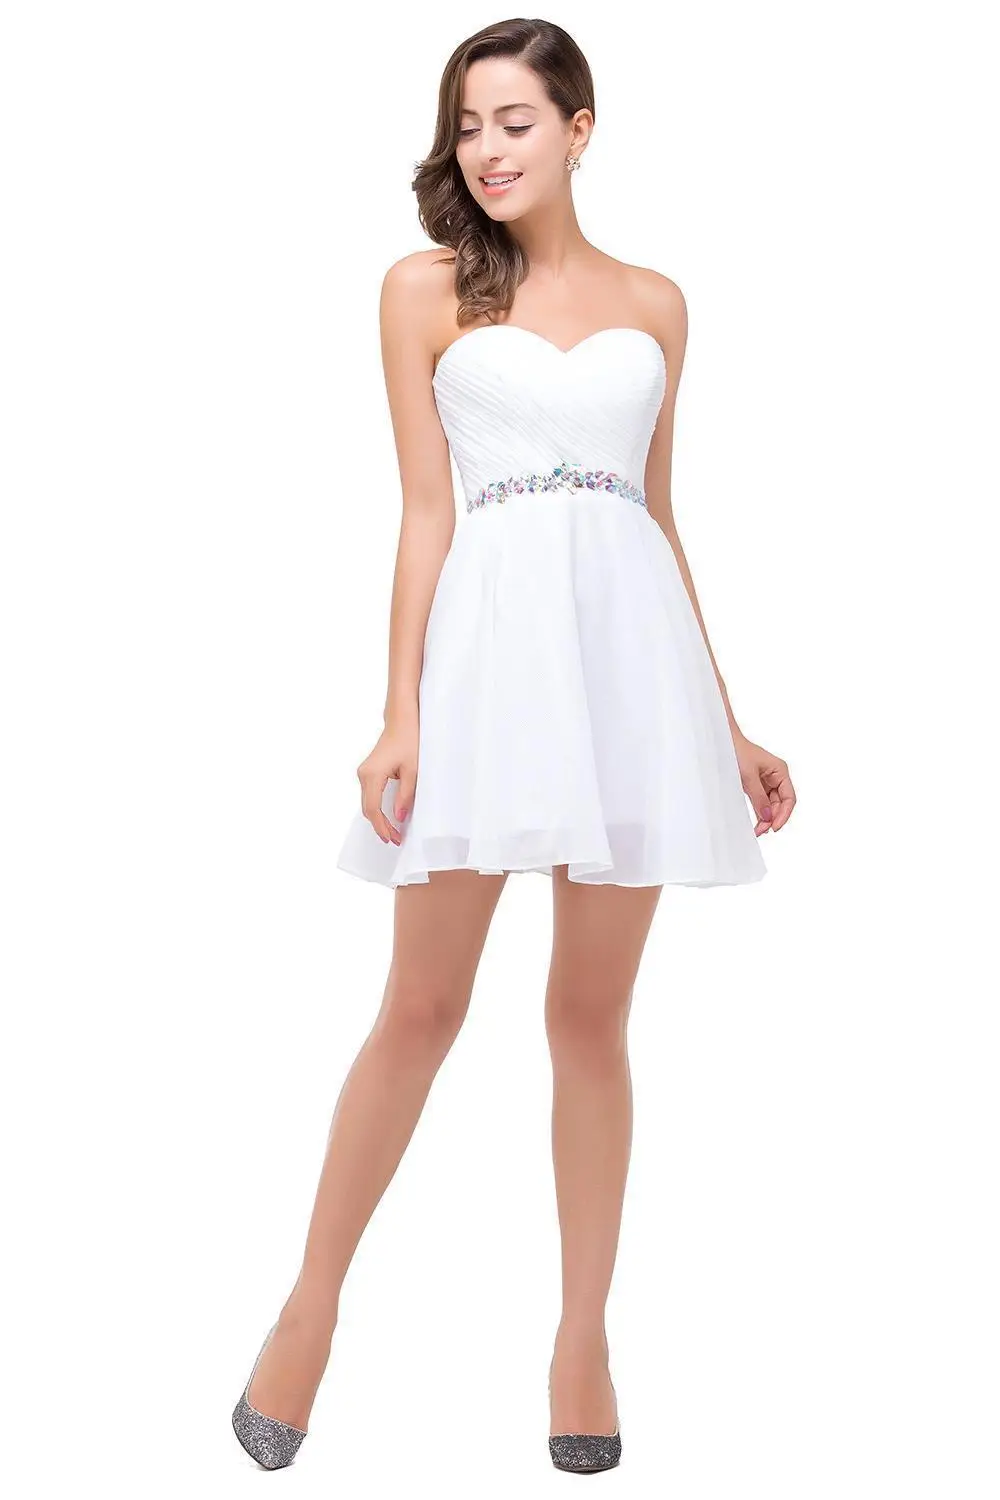 [Final Clear out] короткие платья для выпускного вечера сексуальное платье с открытой спиной на шнуровке для выпускного вечера, официальное платье для женщин, белые платья для вечеринок